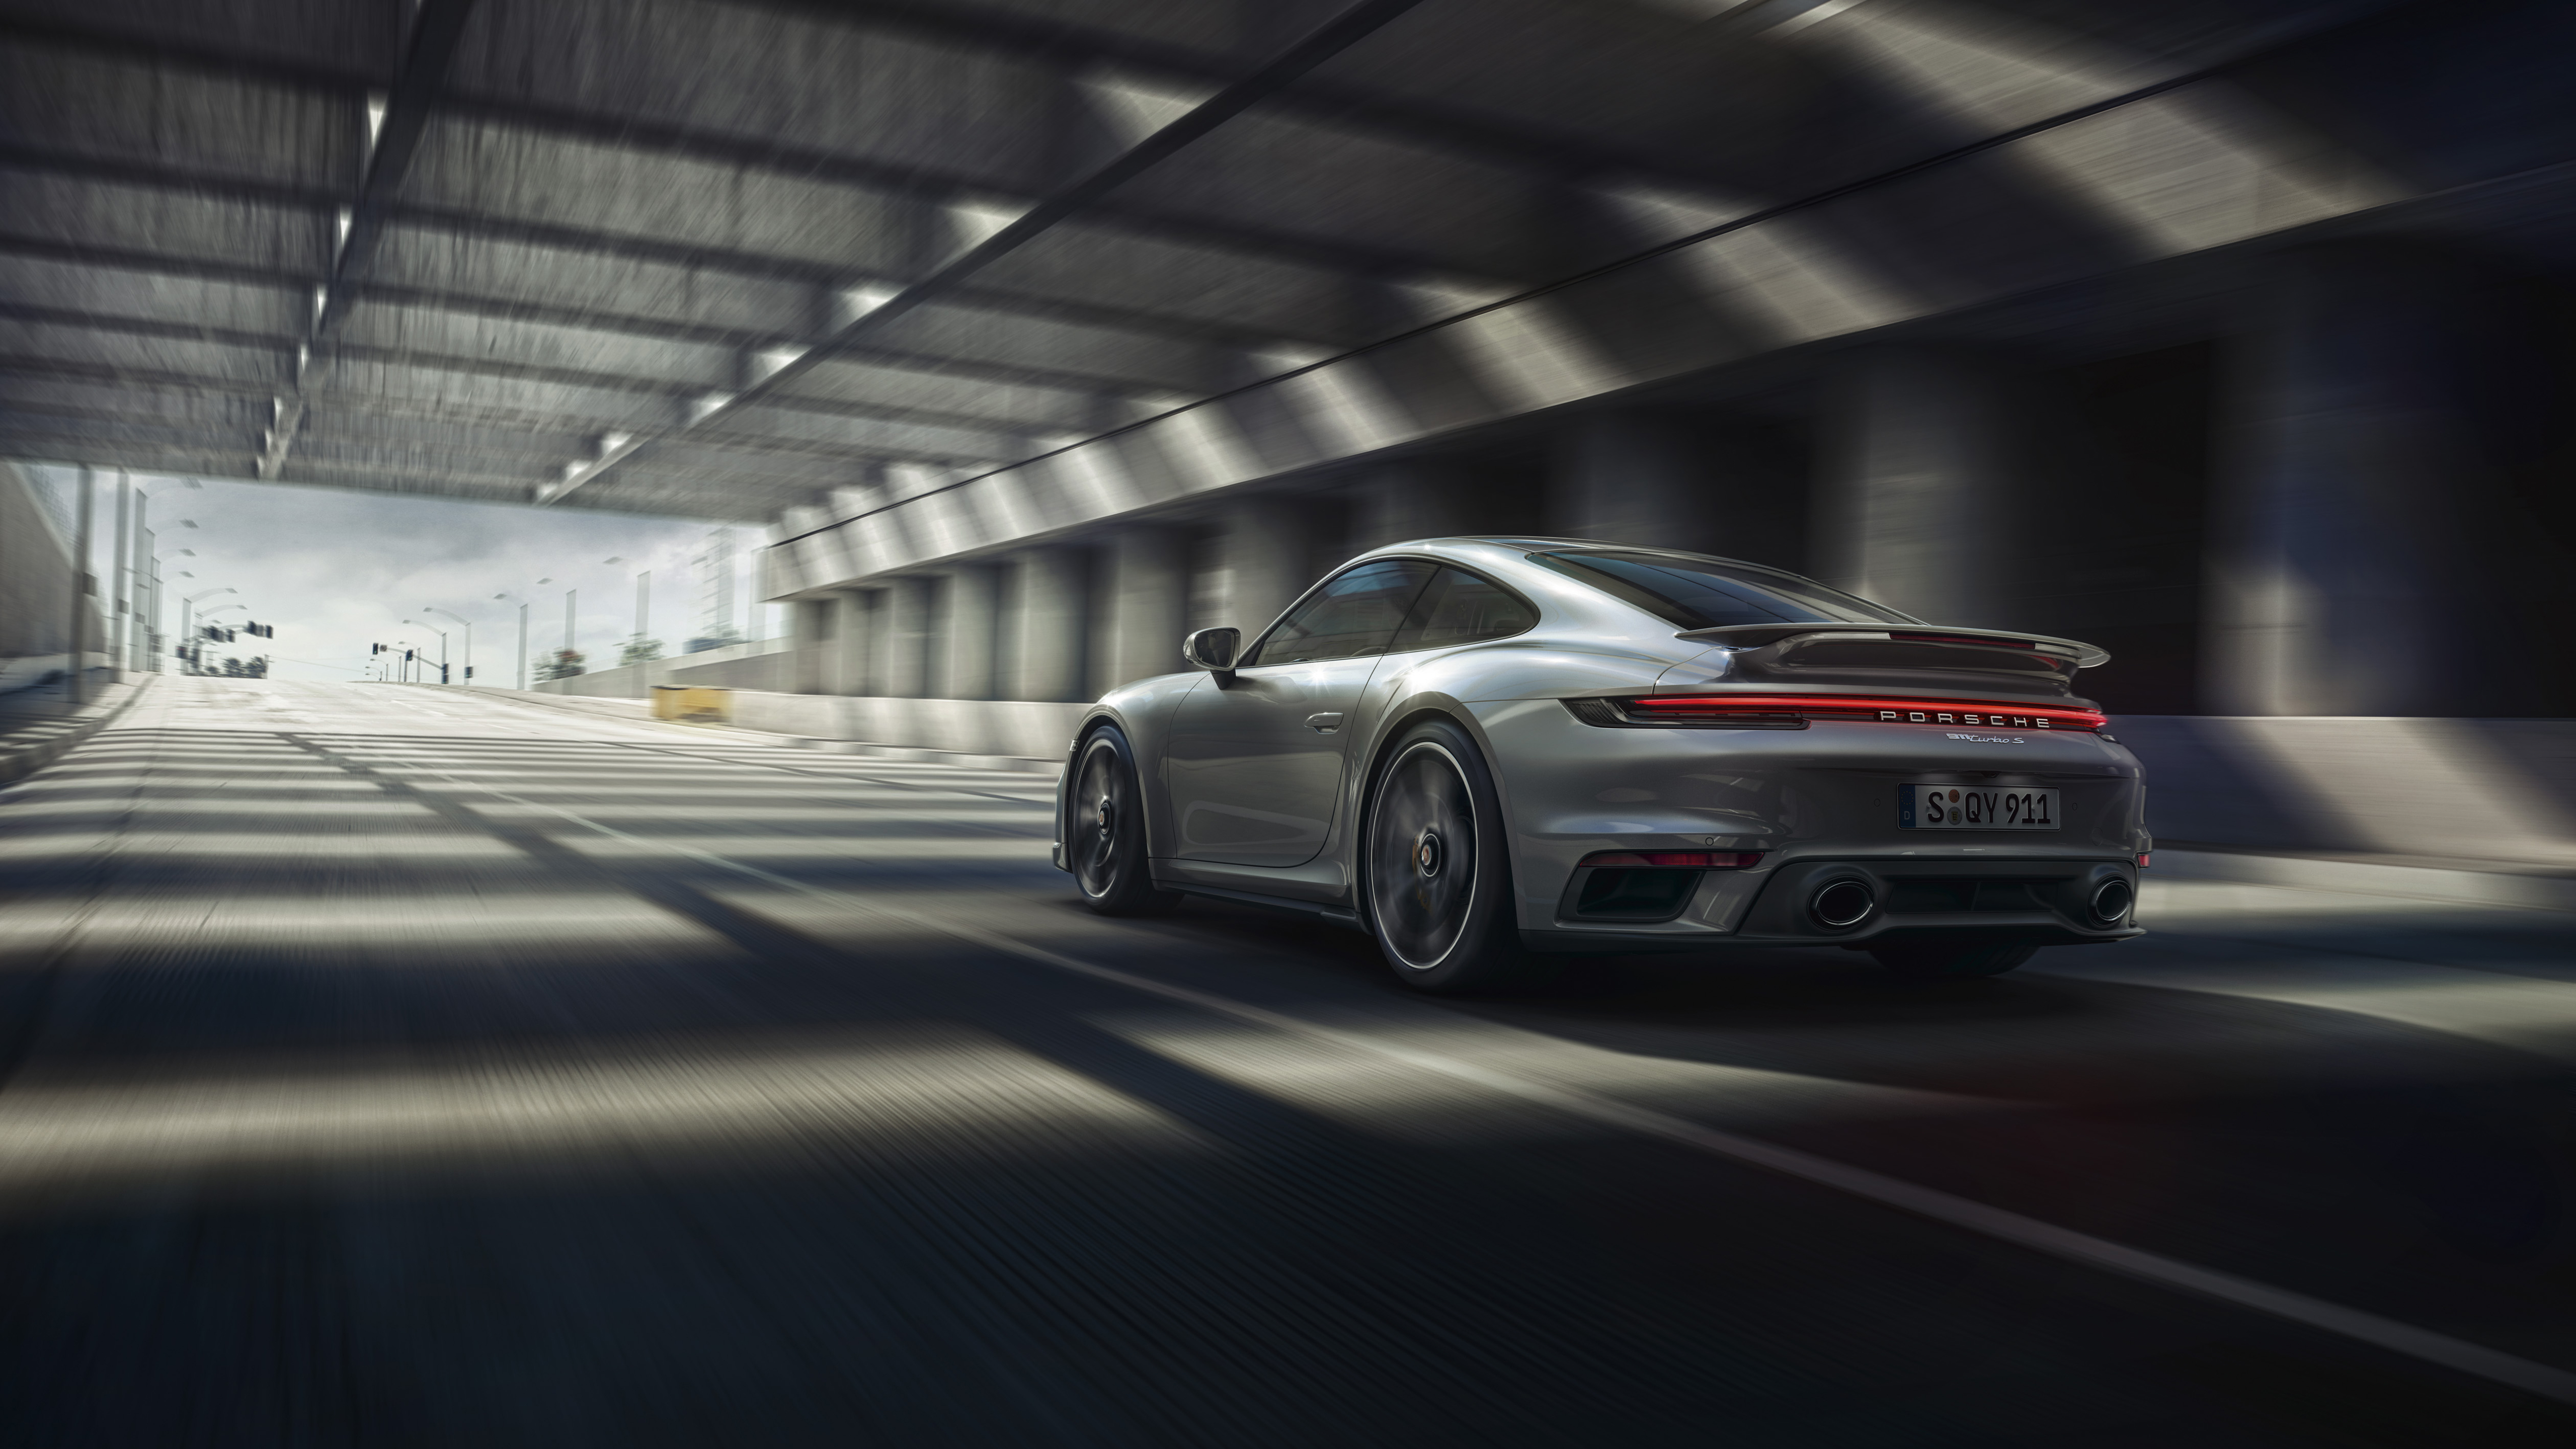 Porsche 911 Turbo Wallpapers